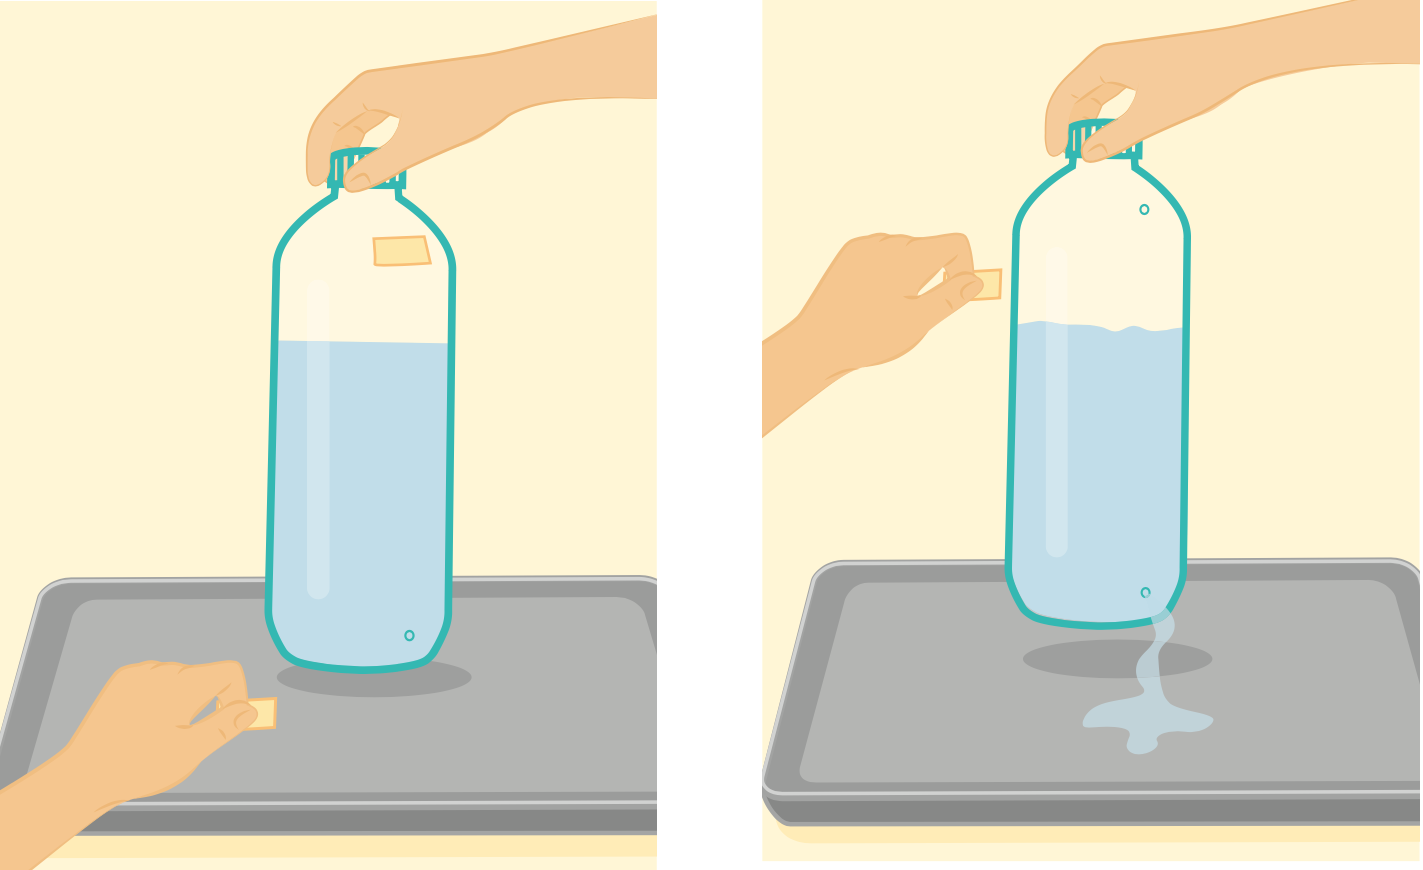 L’acqua esce dalla bottiglia solo se apriamo entrambi i fori. Poco intuitivo, ma c'è una ragione